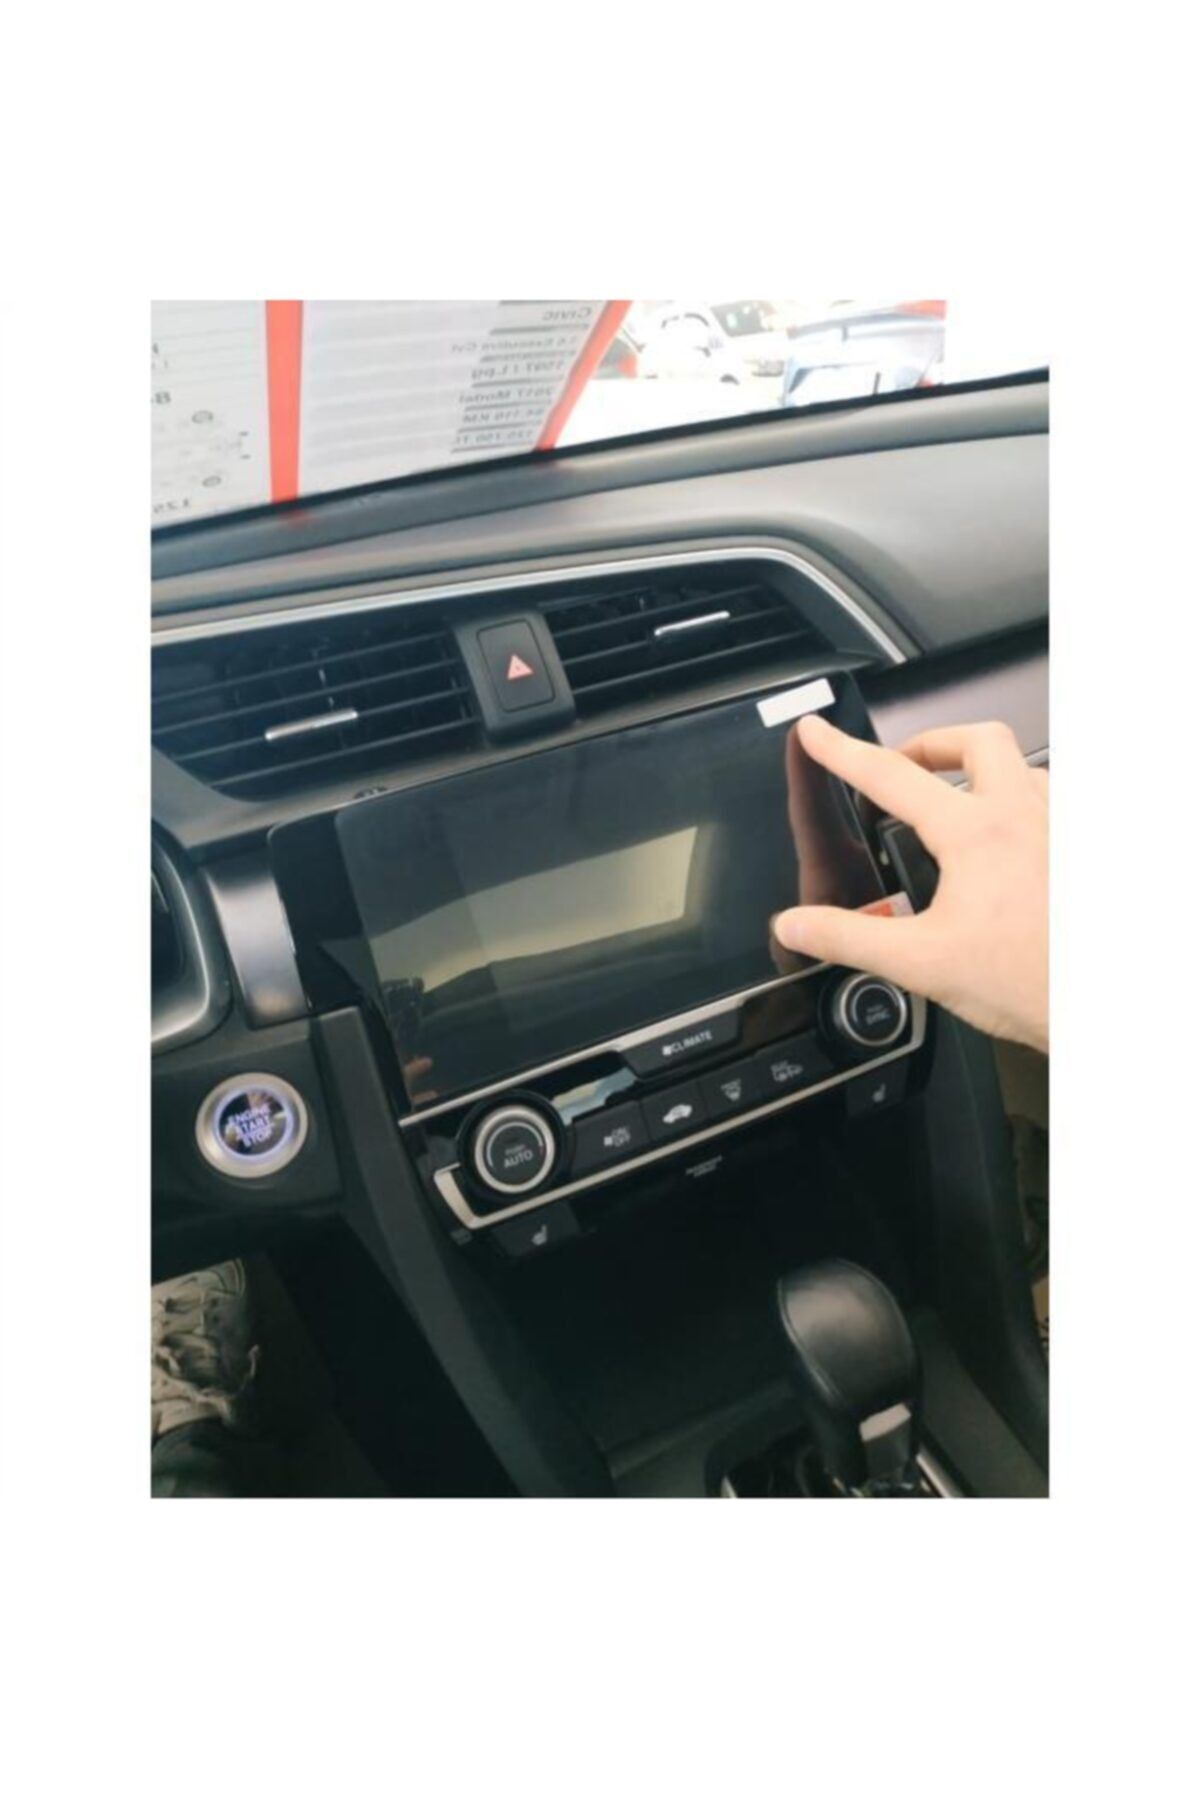 OLED GARAJ Honda Civic İçin Uyumlu Fc5 Ekran Koruyucu Exe-Rs Model Uyumlu 2016-2019